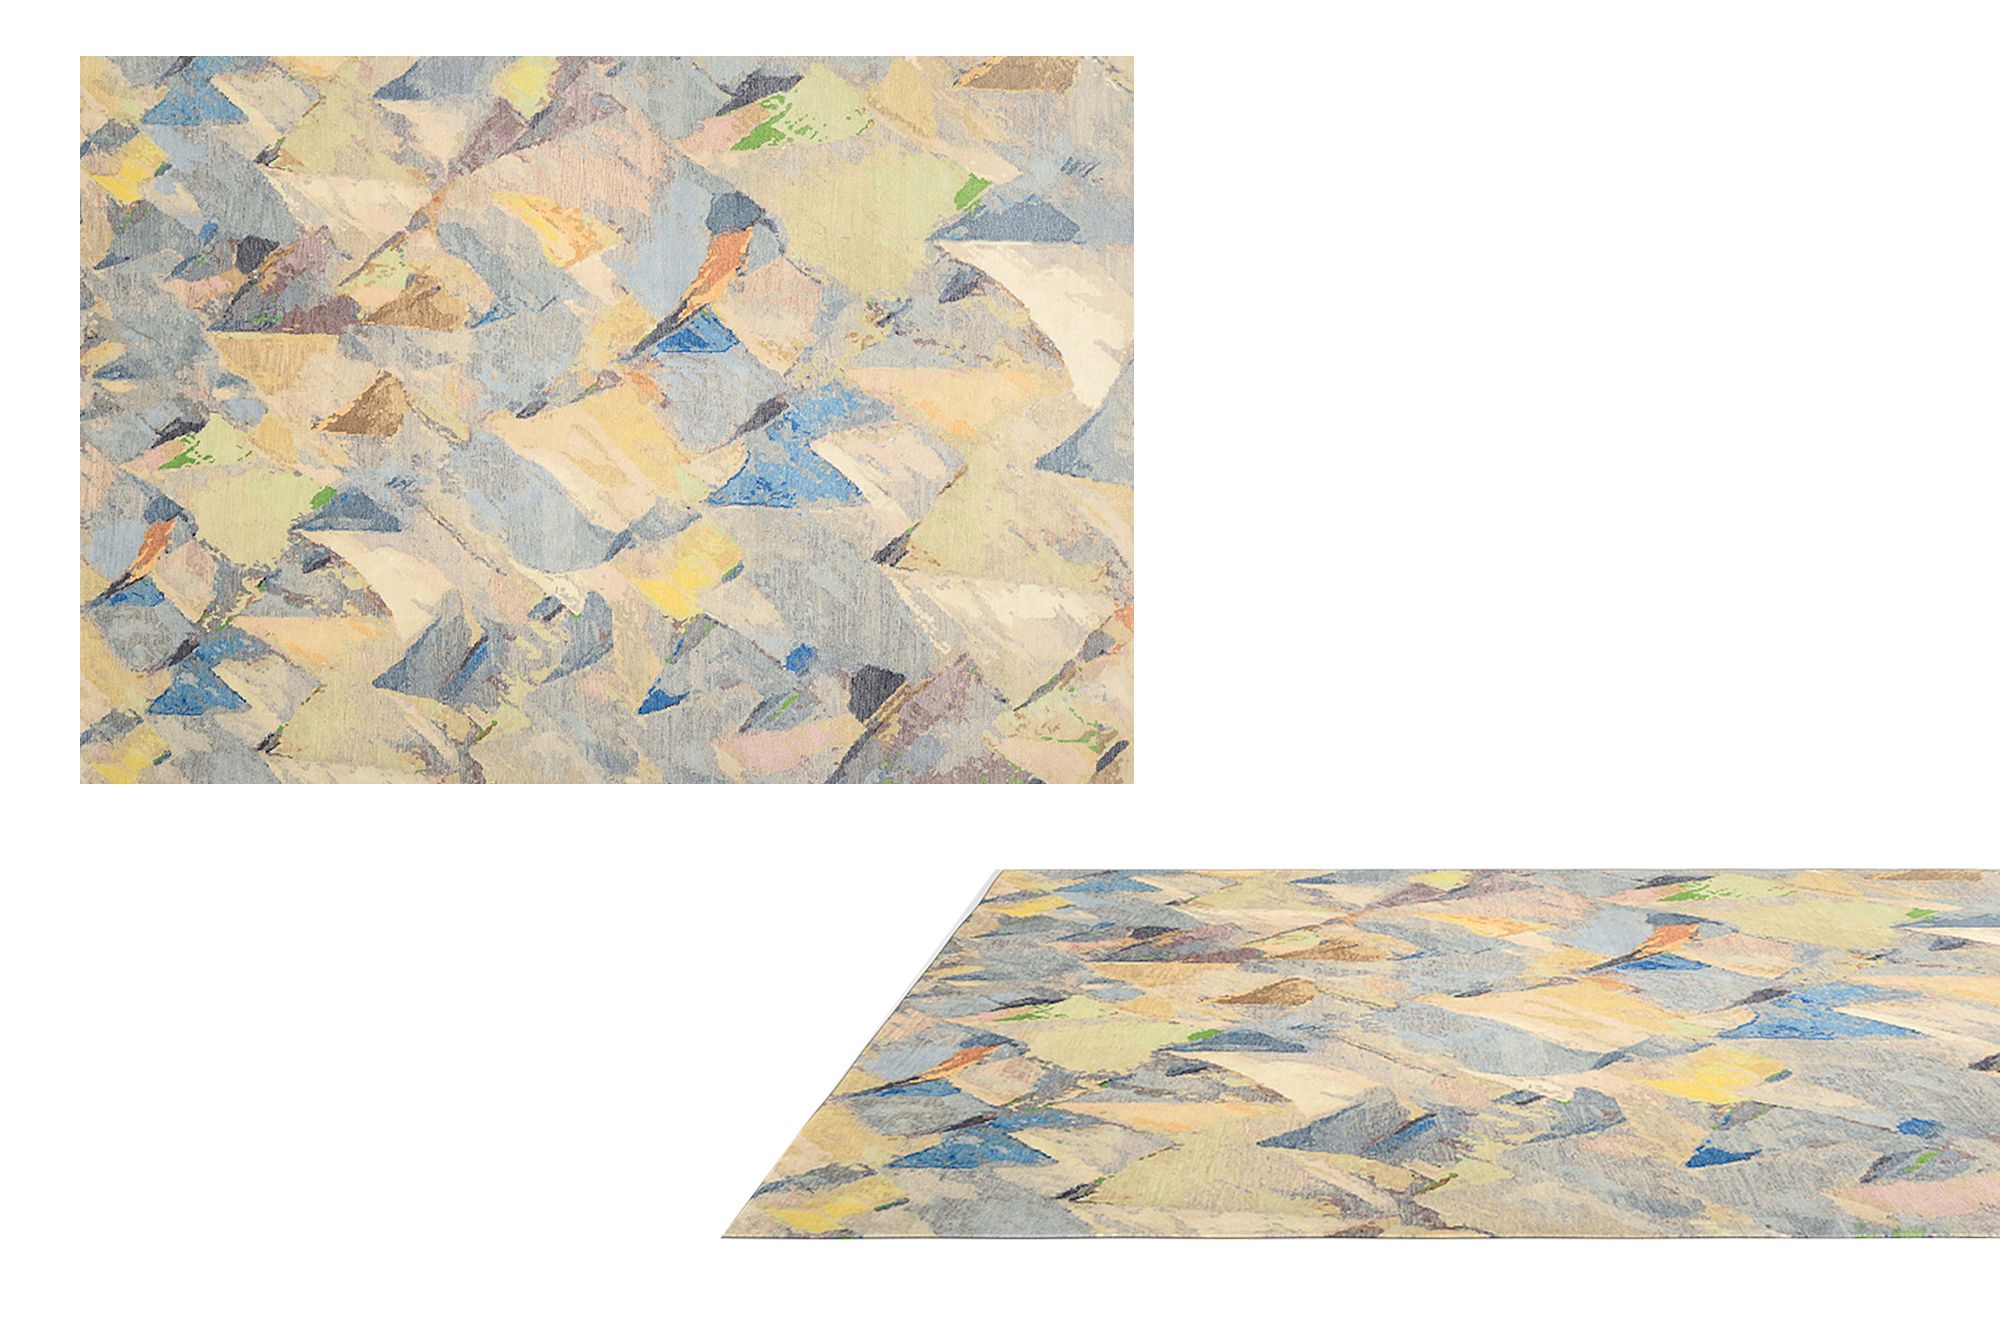 现代简约抽象地毯